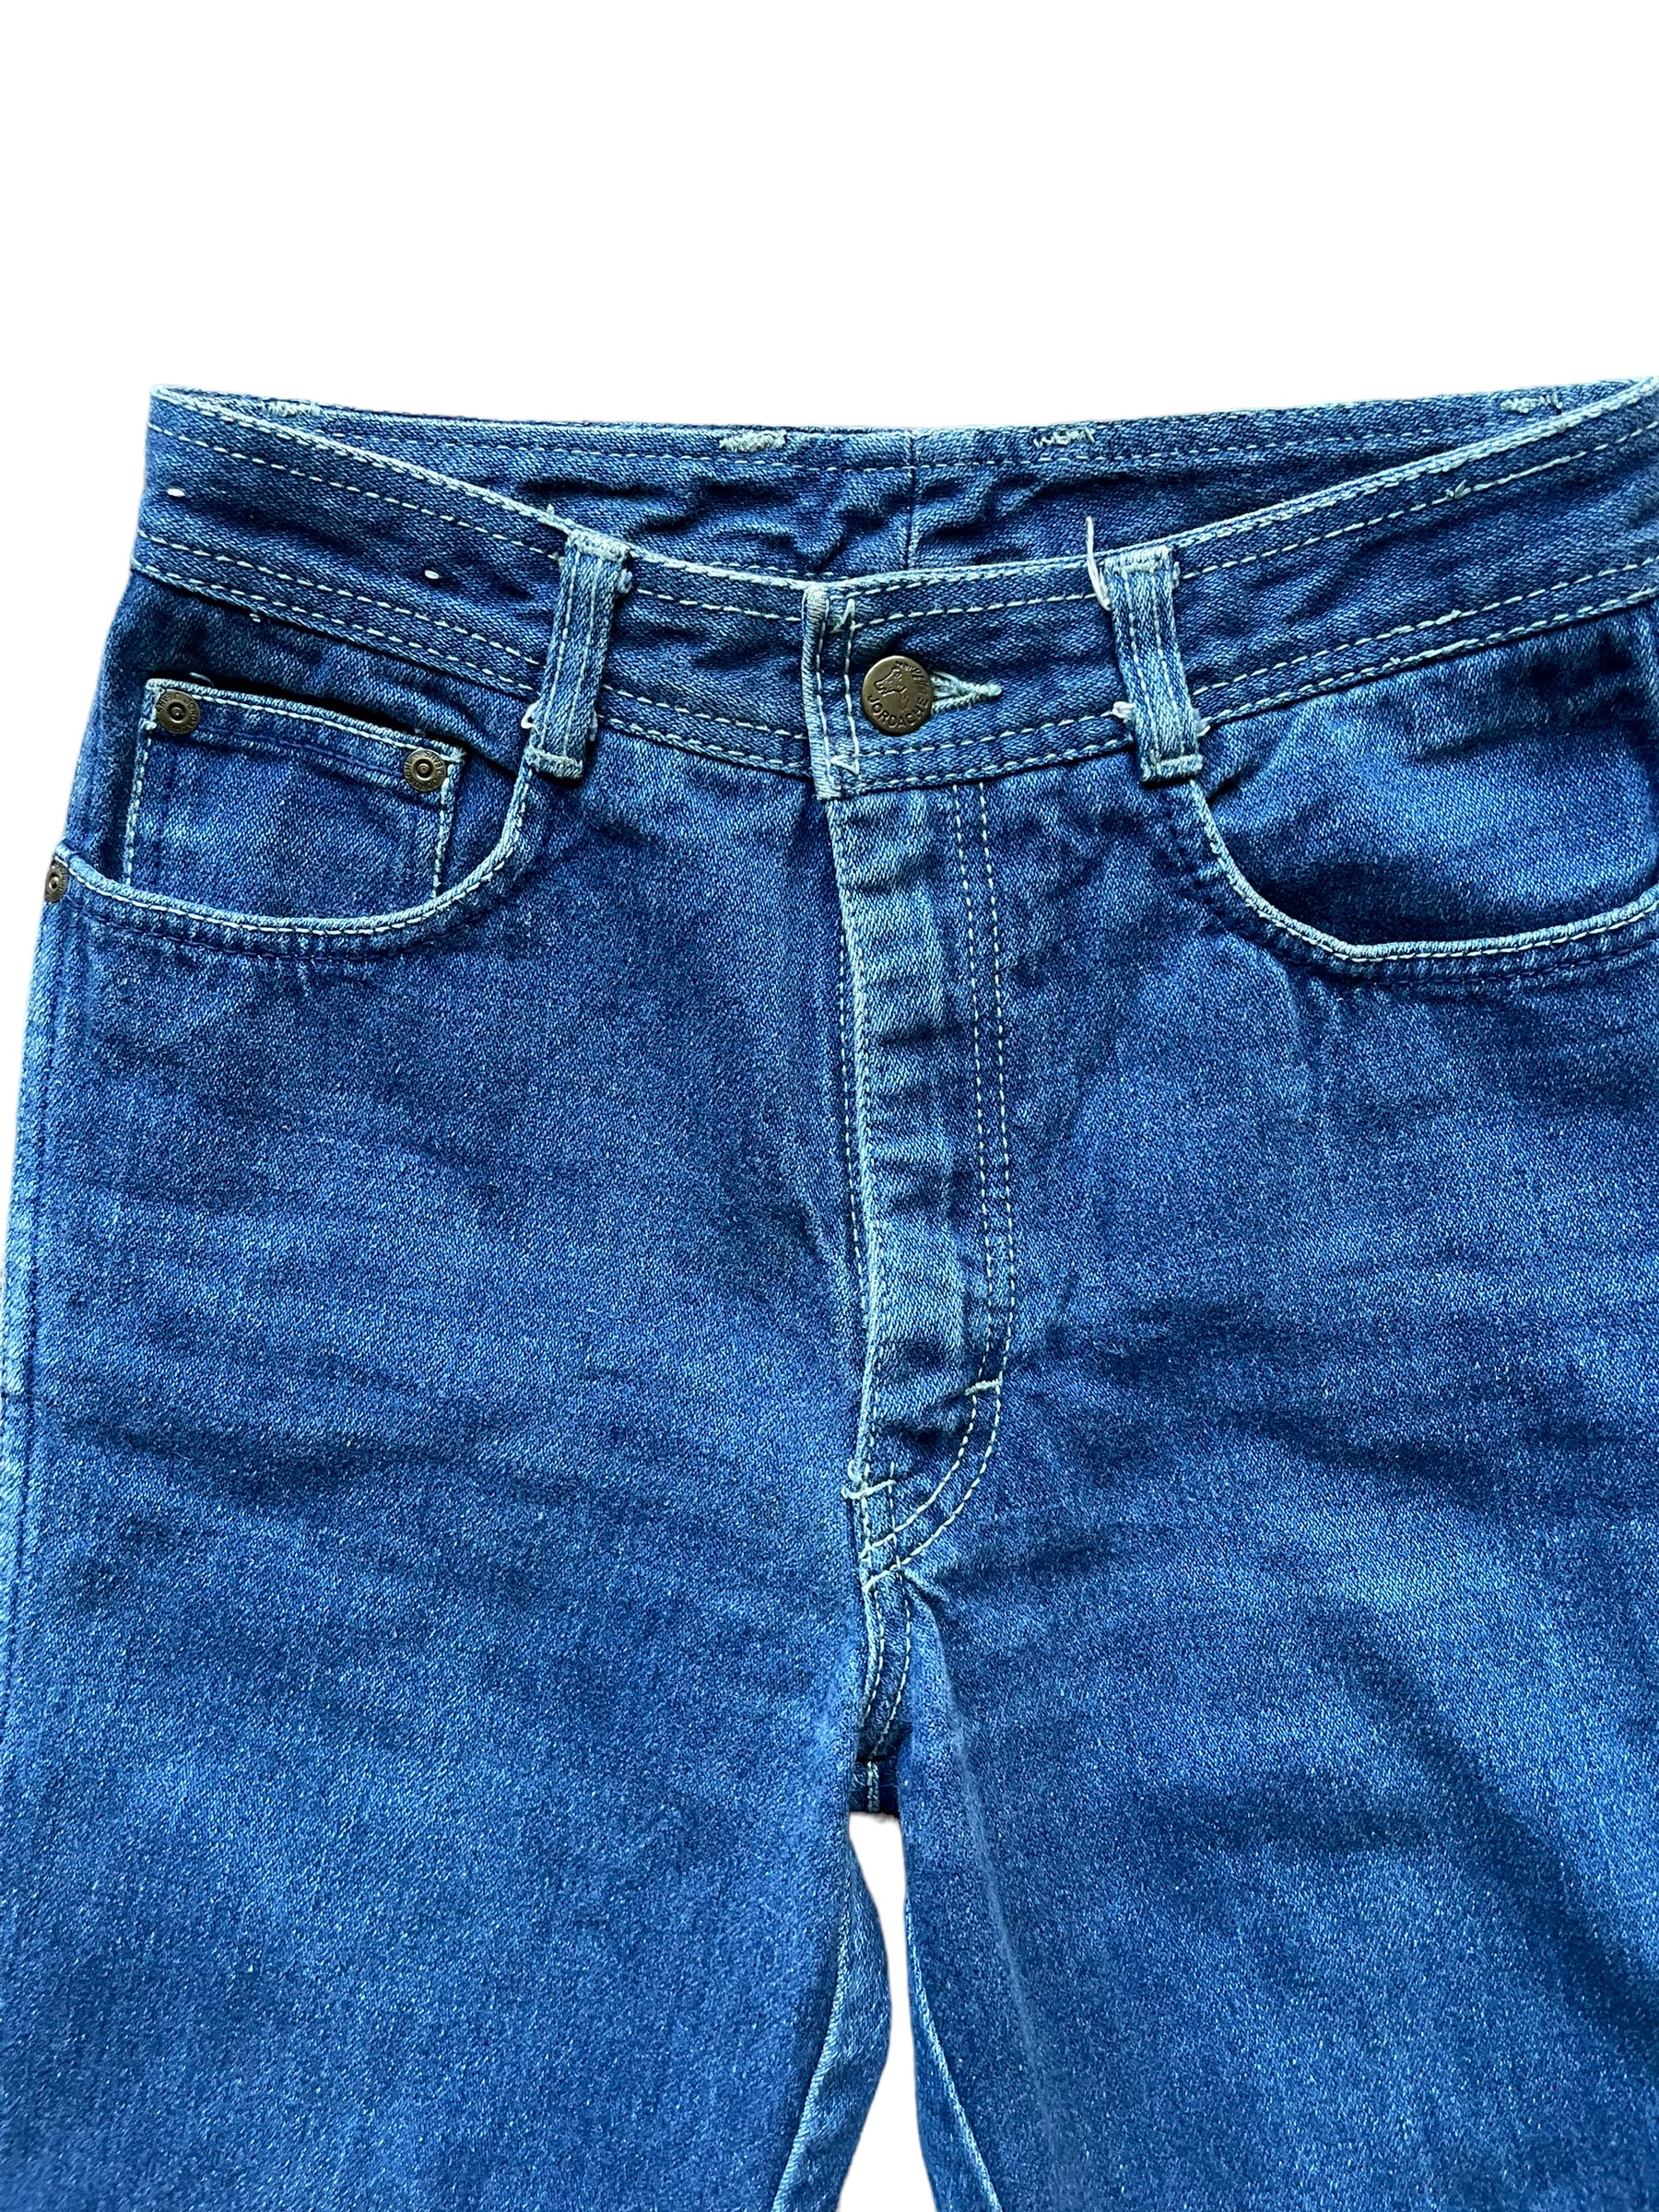 Vintage Jordache Girls Jeans Bow Detail Size 6 Cotton Denim